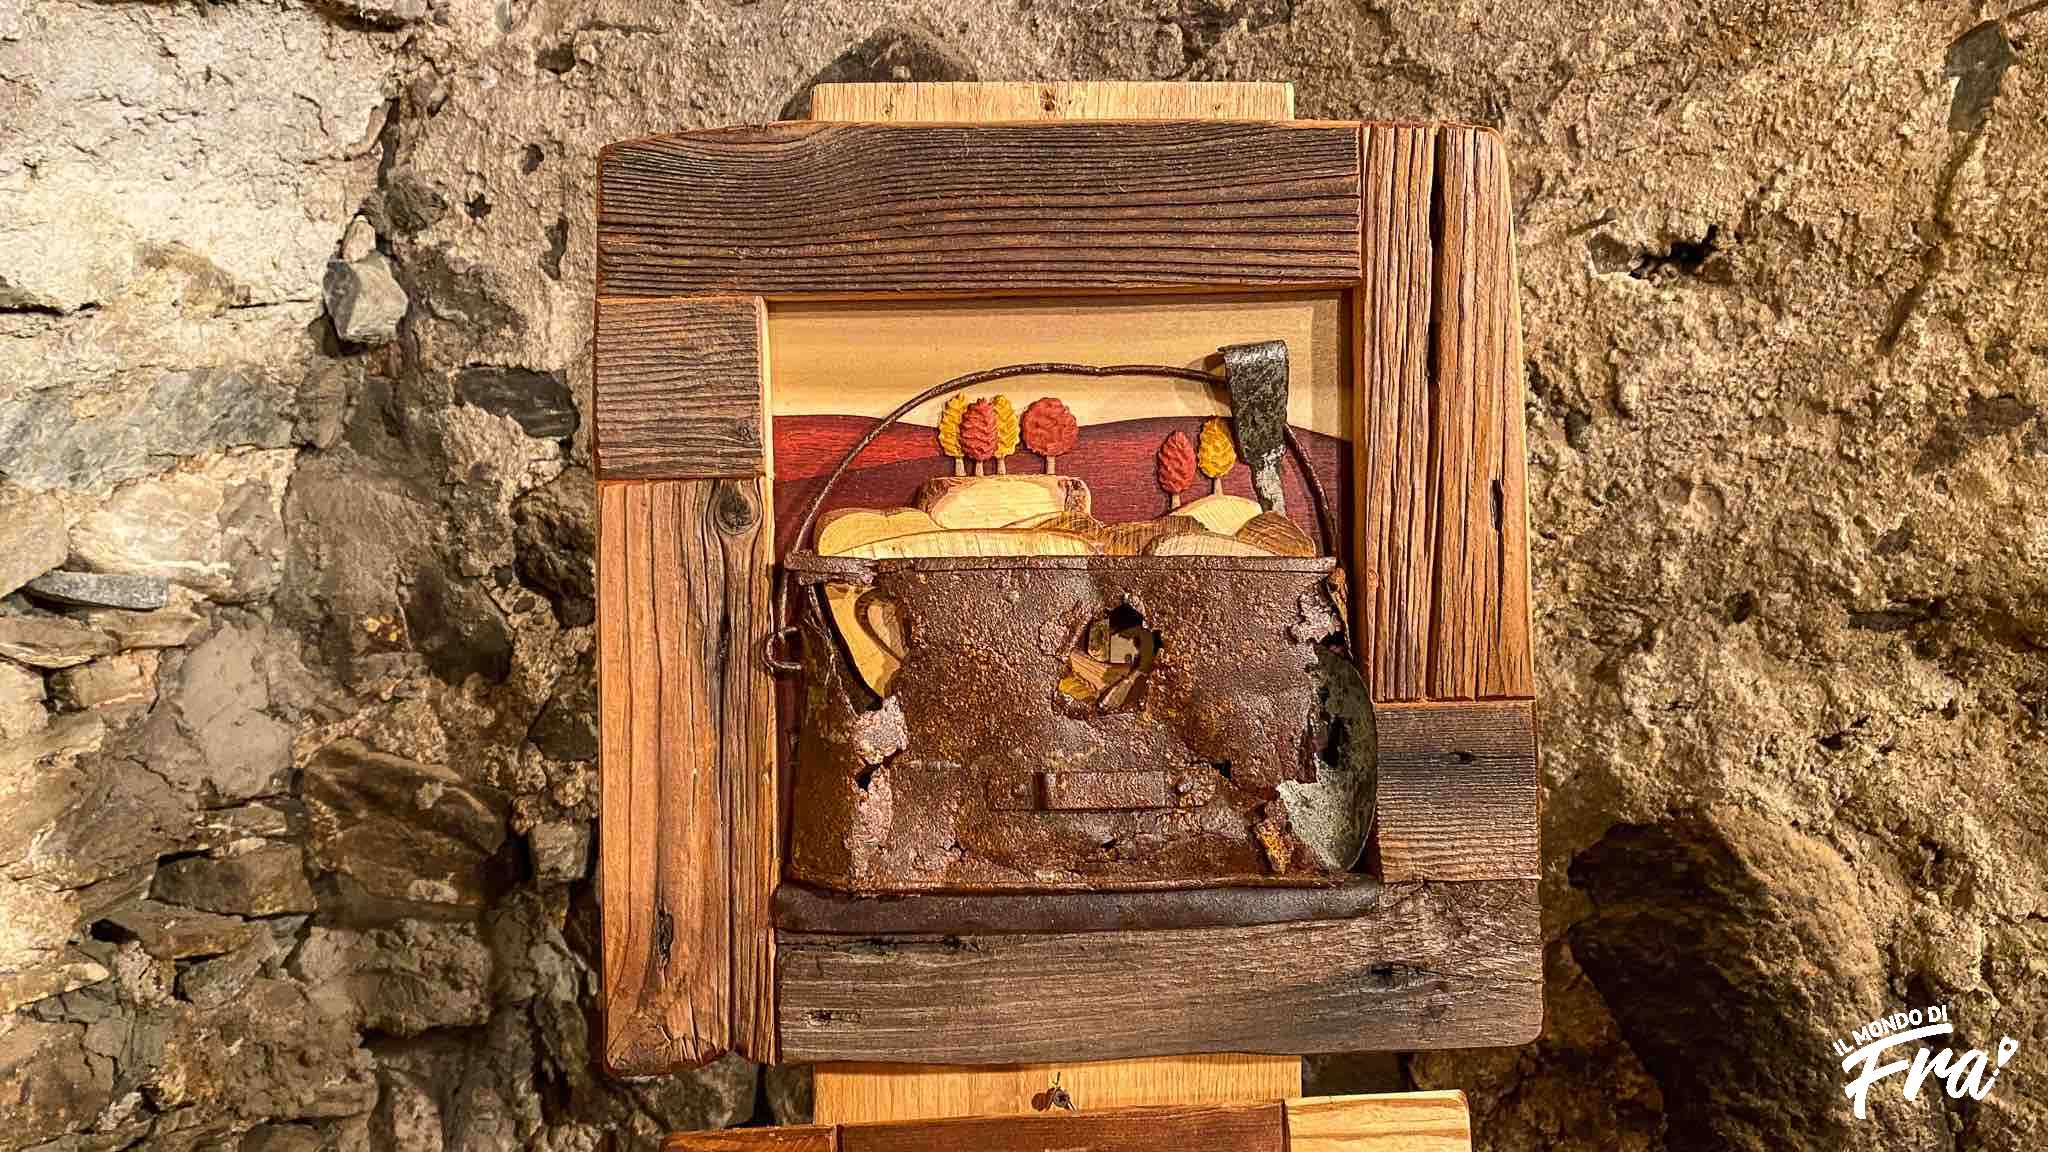 Bienno (BS)
Le opere in legno della Grande Guerra di Mario Favaro